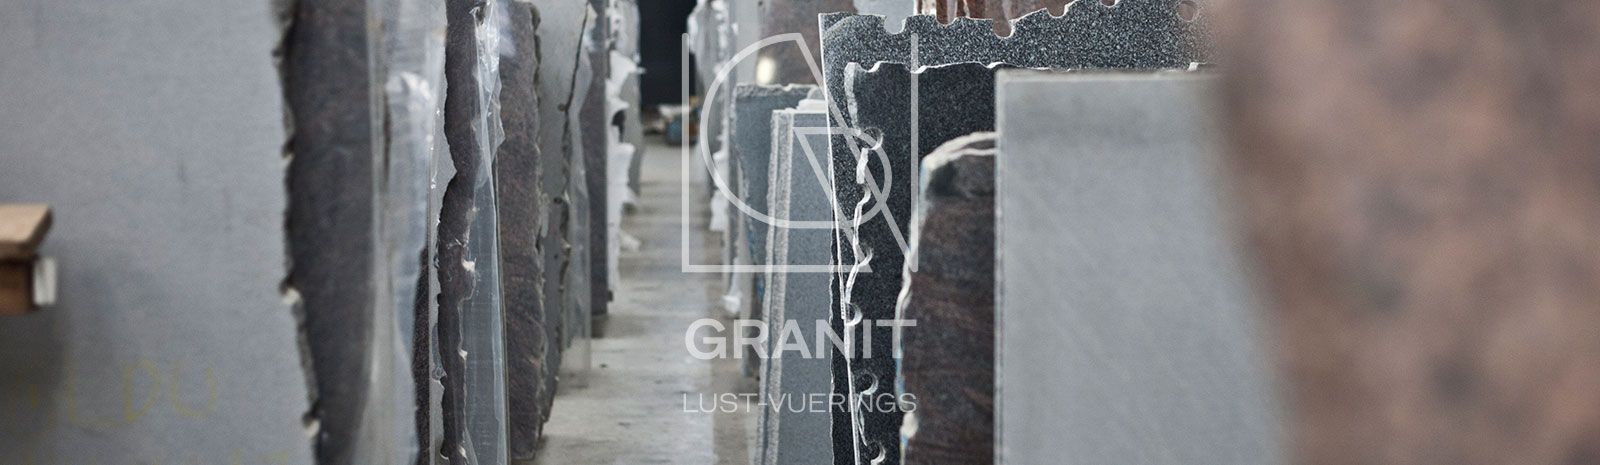 Granit Lust-Vuerings - Marbre